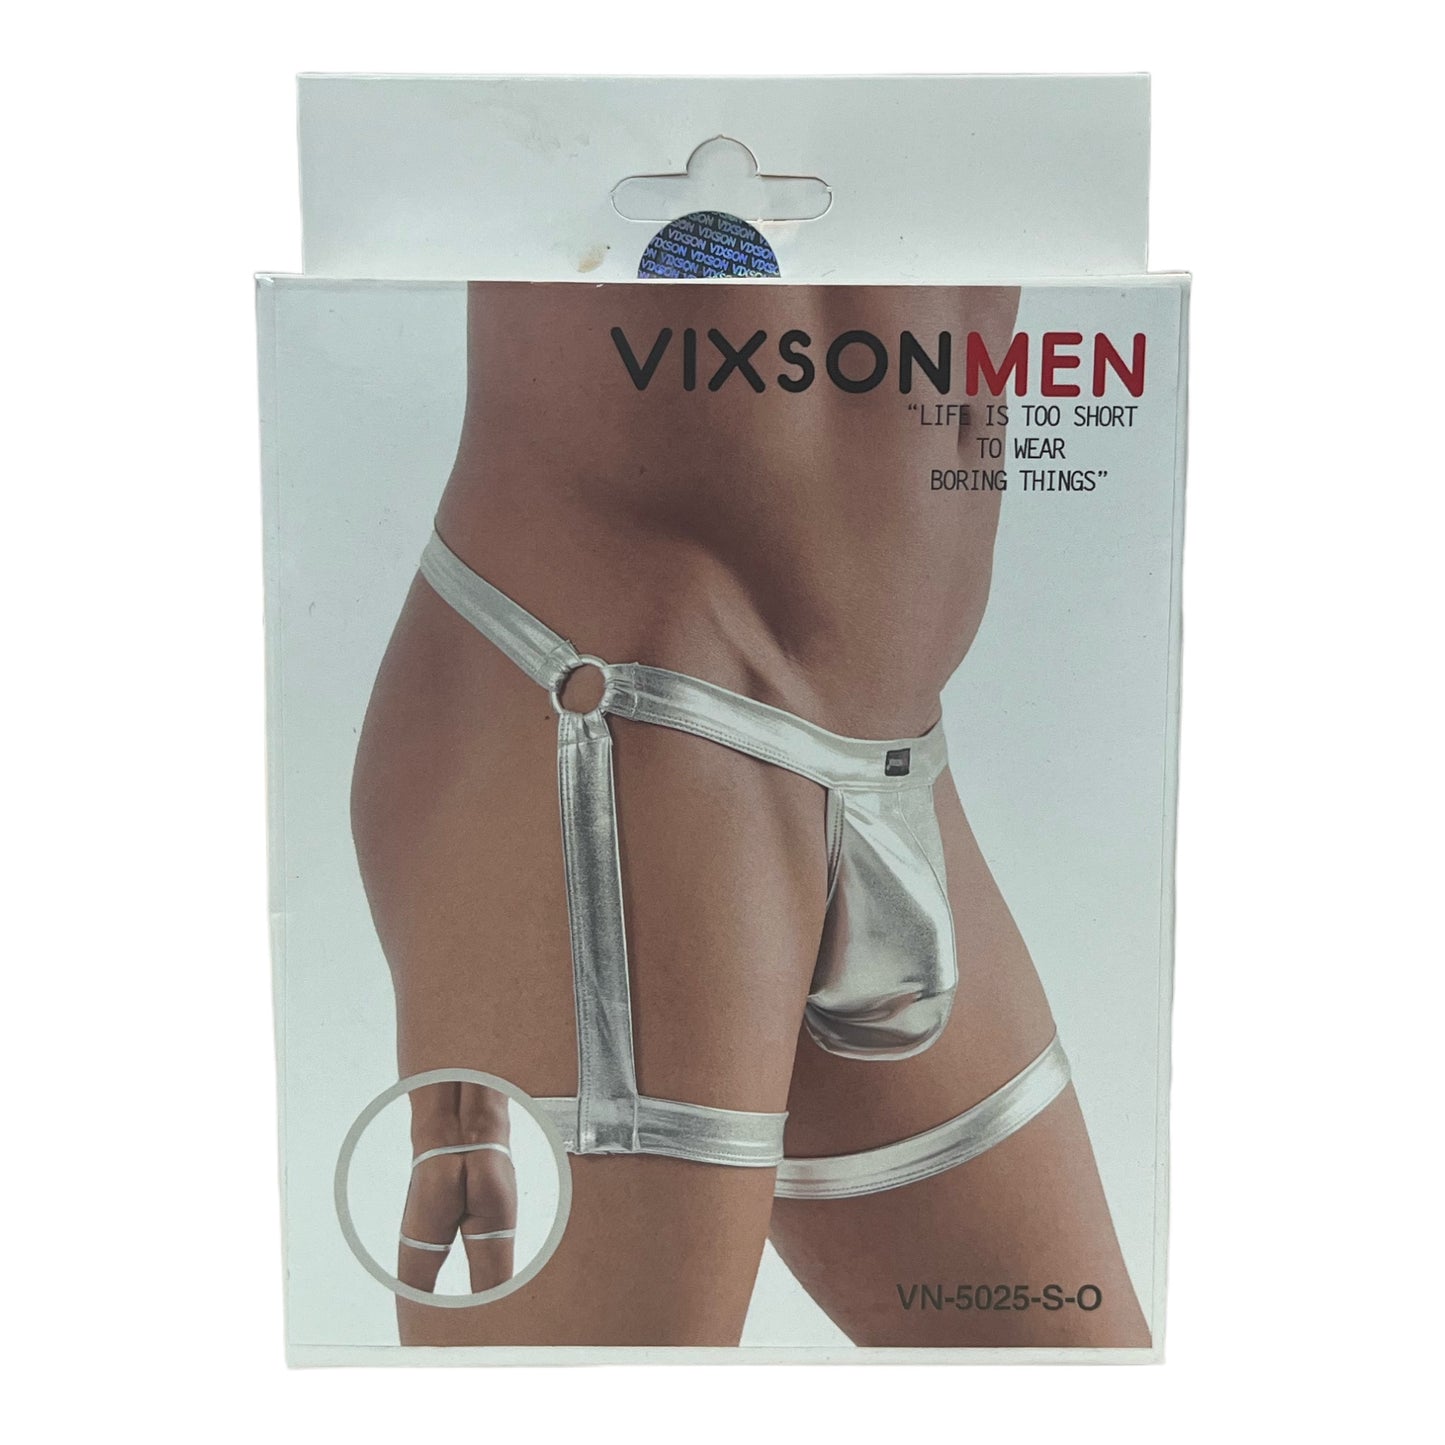 Vixson Men - Jockstrap With Suspender Look - Silver